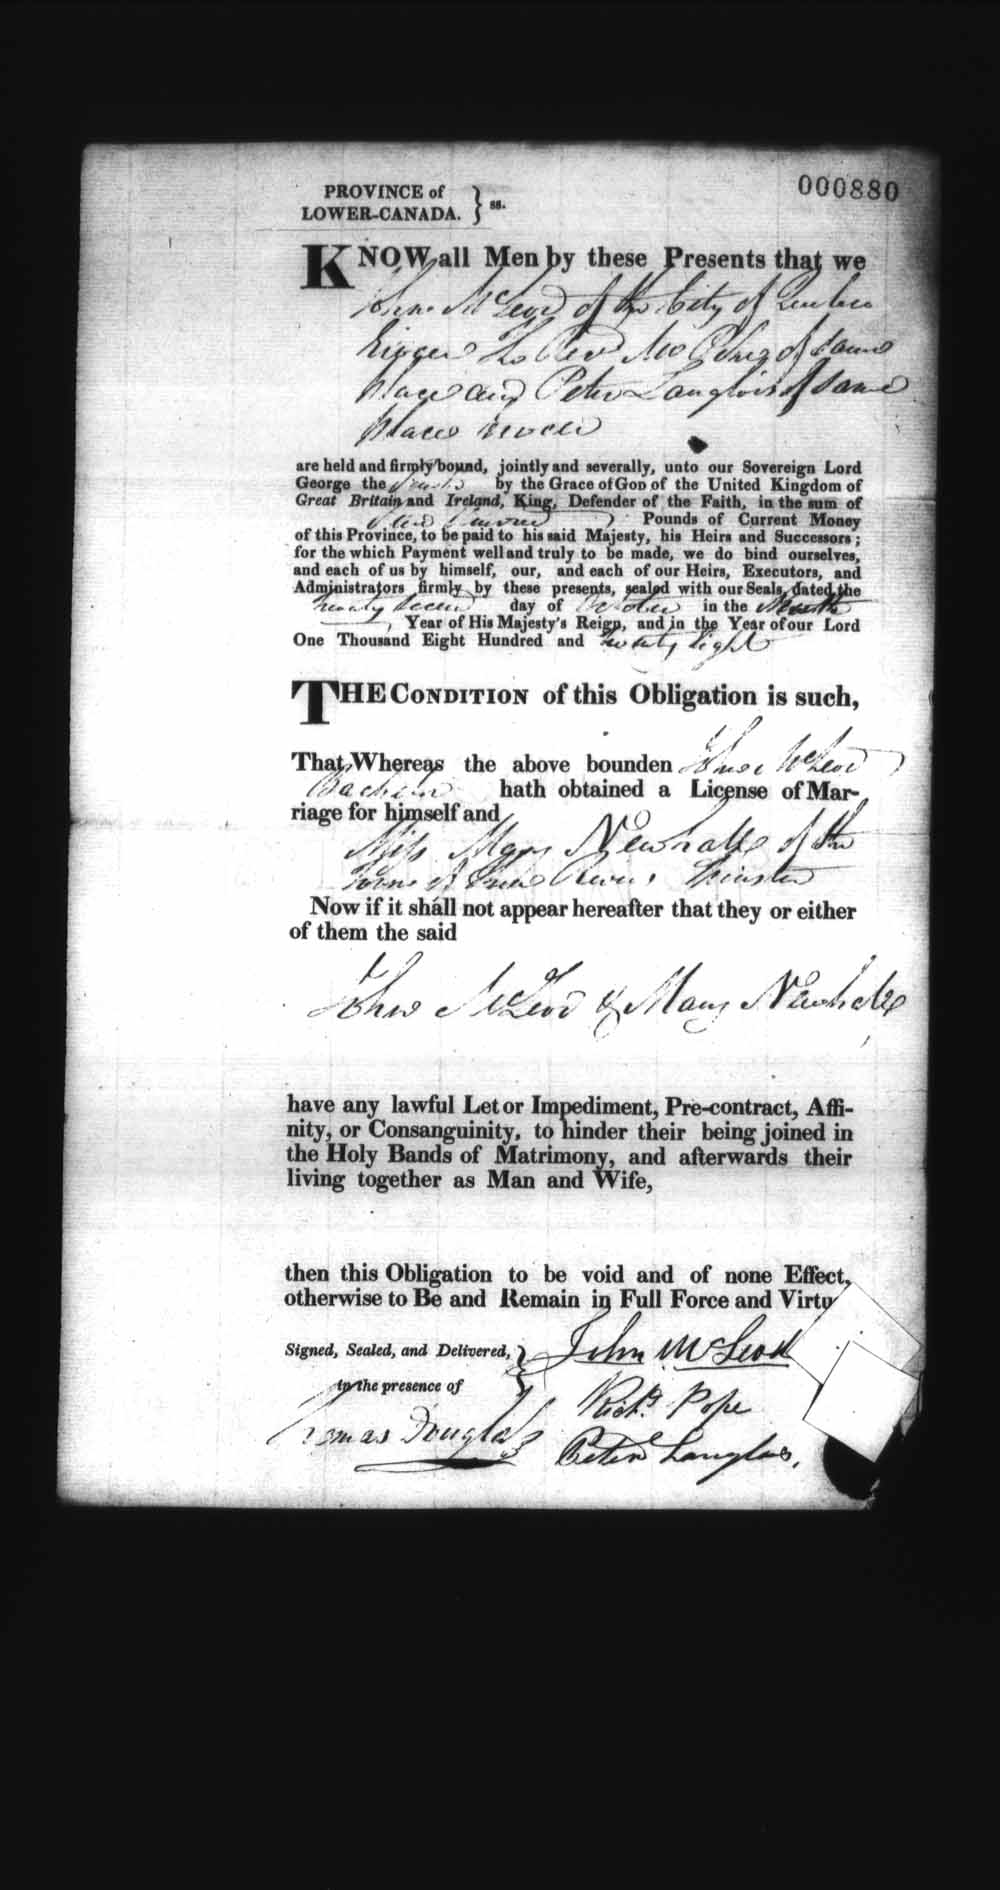 Page numérisé de Cautionnements de mariages pour le Haut-Canada et le Bas-Canada (1779-1865) pour l'image numéro: e008236971